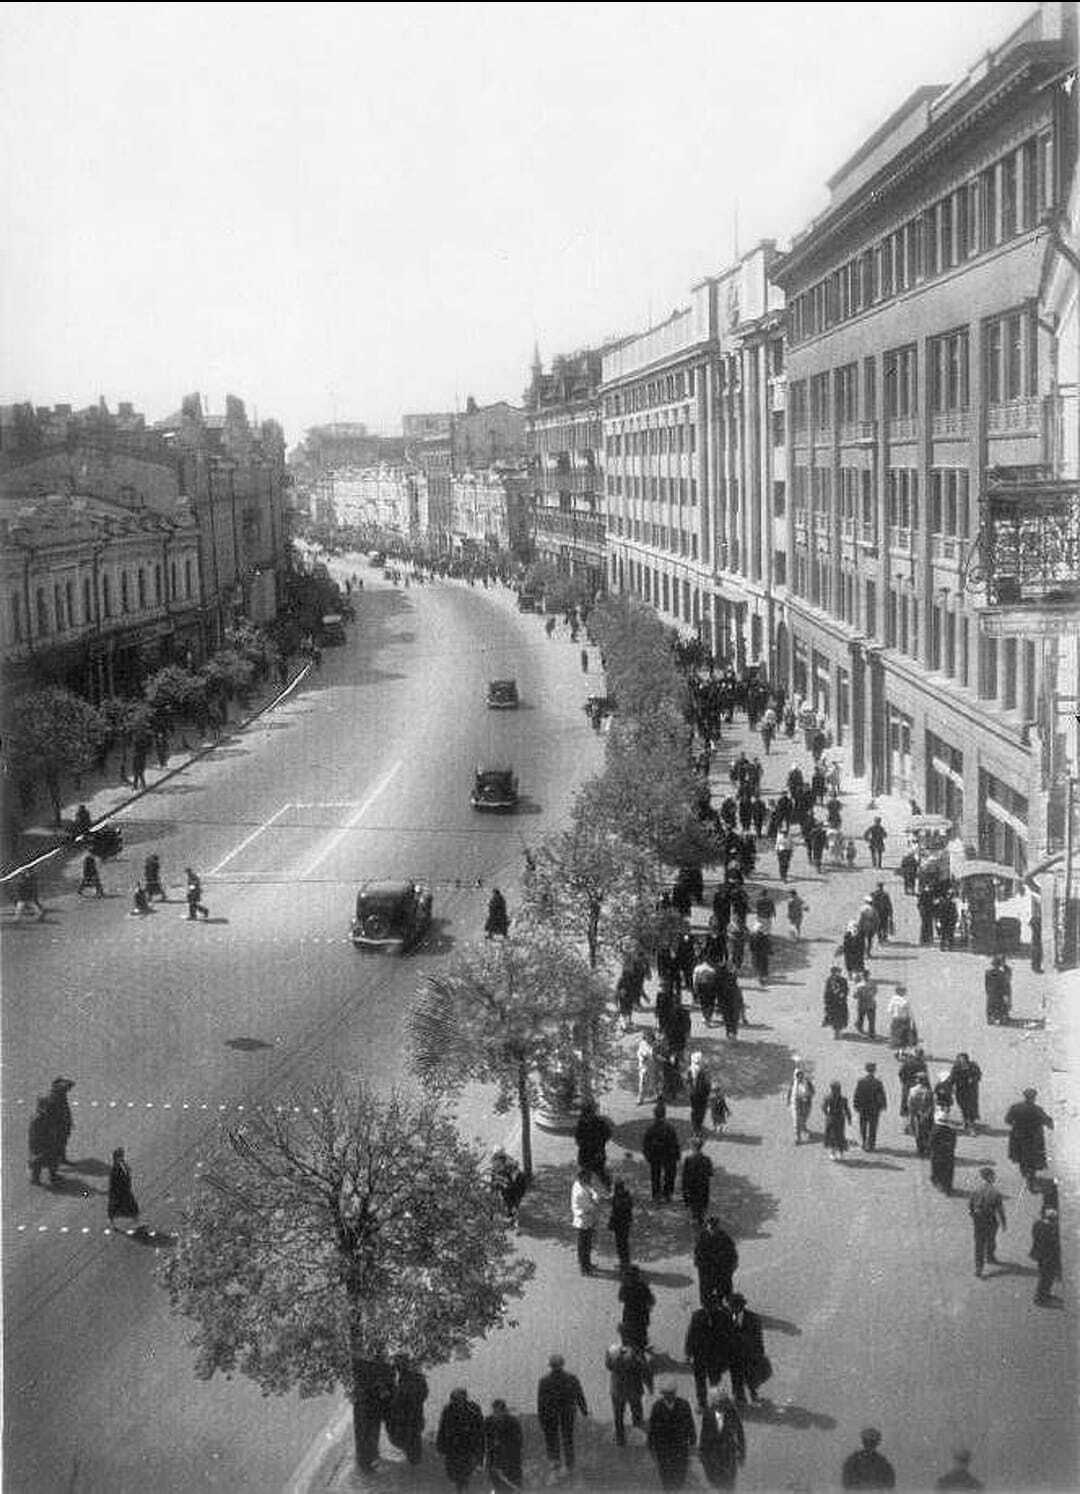 Крещатик в Киеве вплоть до начала Второй мировой войны: кинотеатры, трамвай и даже цирк. Архивные фото